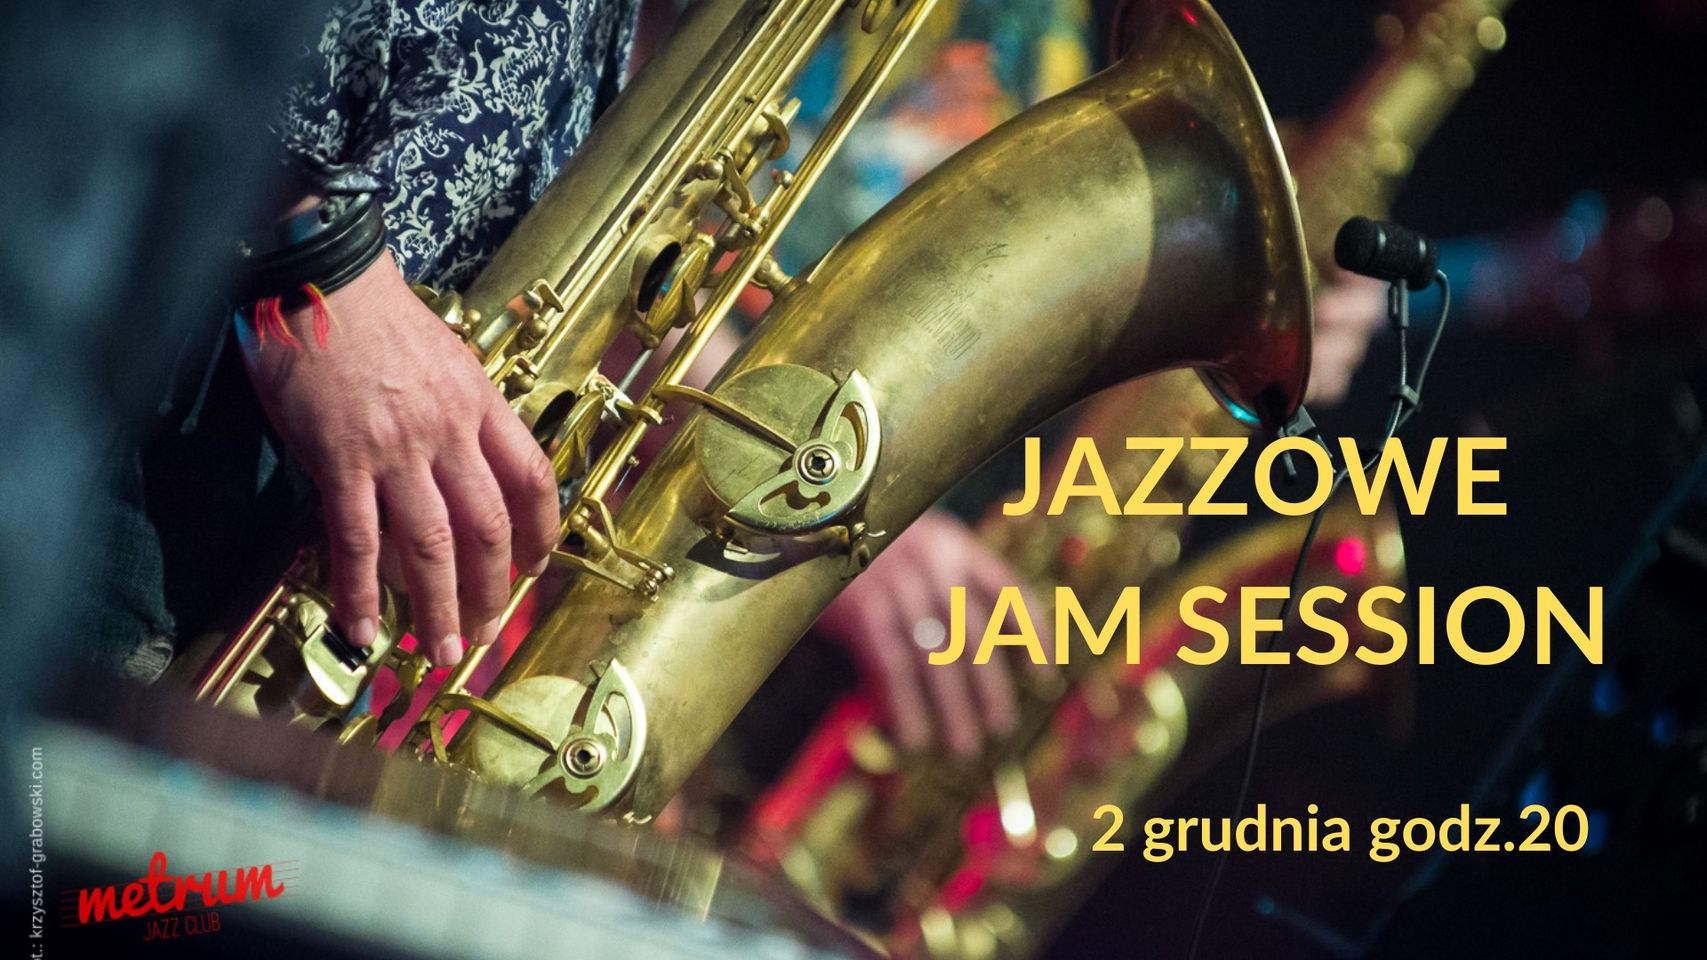  Jazzowe Jazz Session Na zdjęciu plakat imprezy